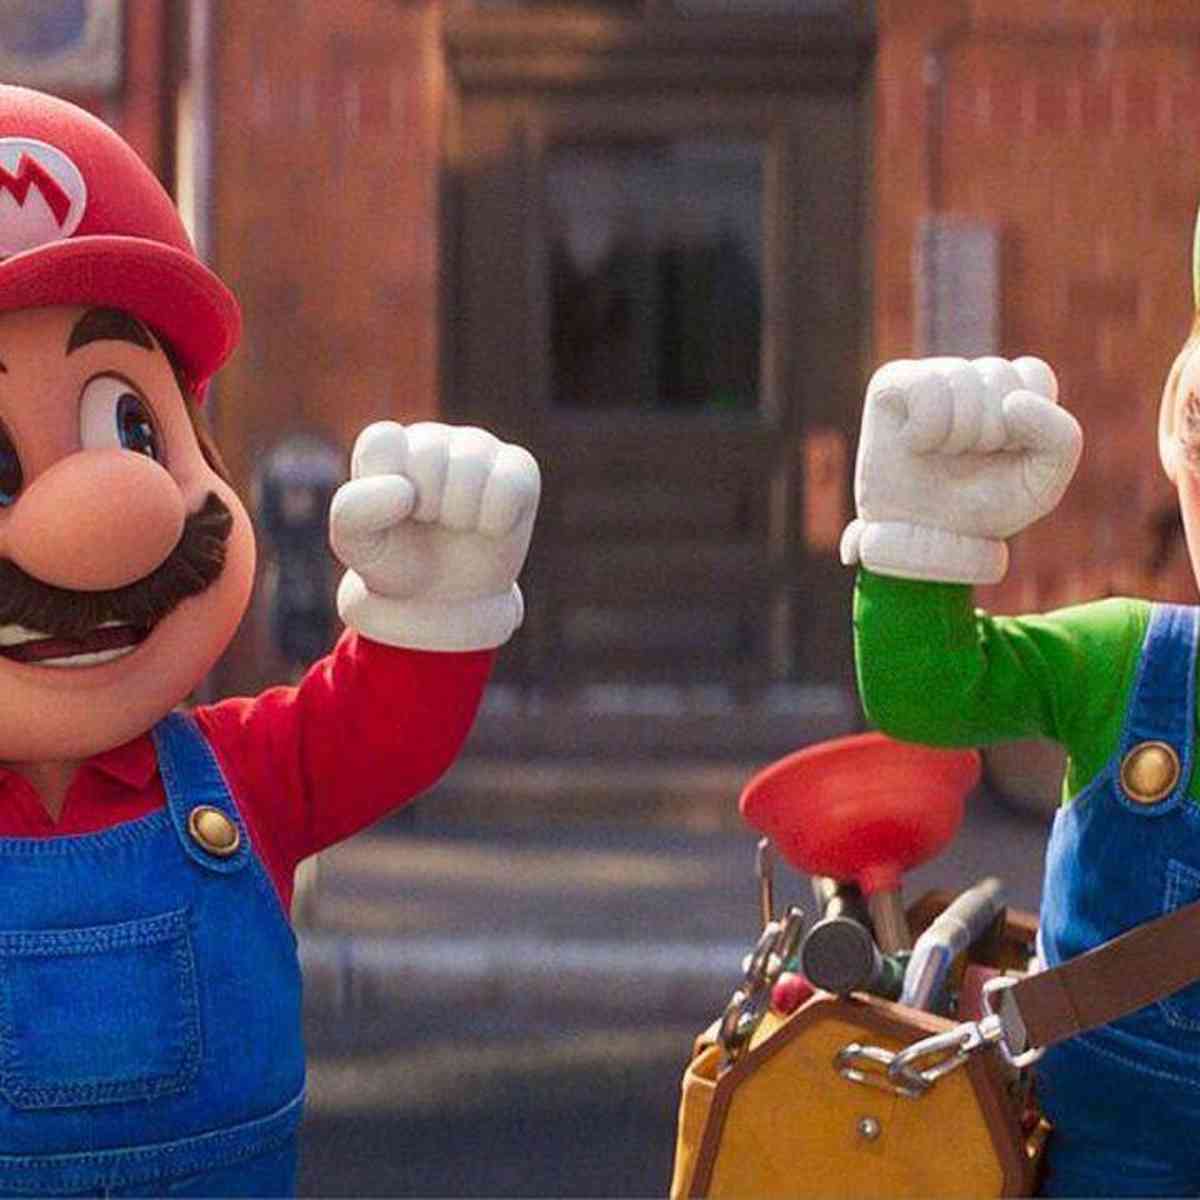 Super Mario Bros.”: filme bate recorde de bilheteria; saiba mais